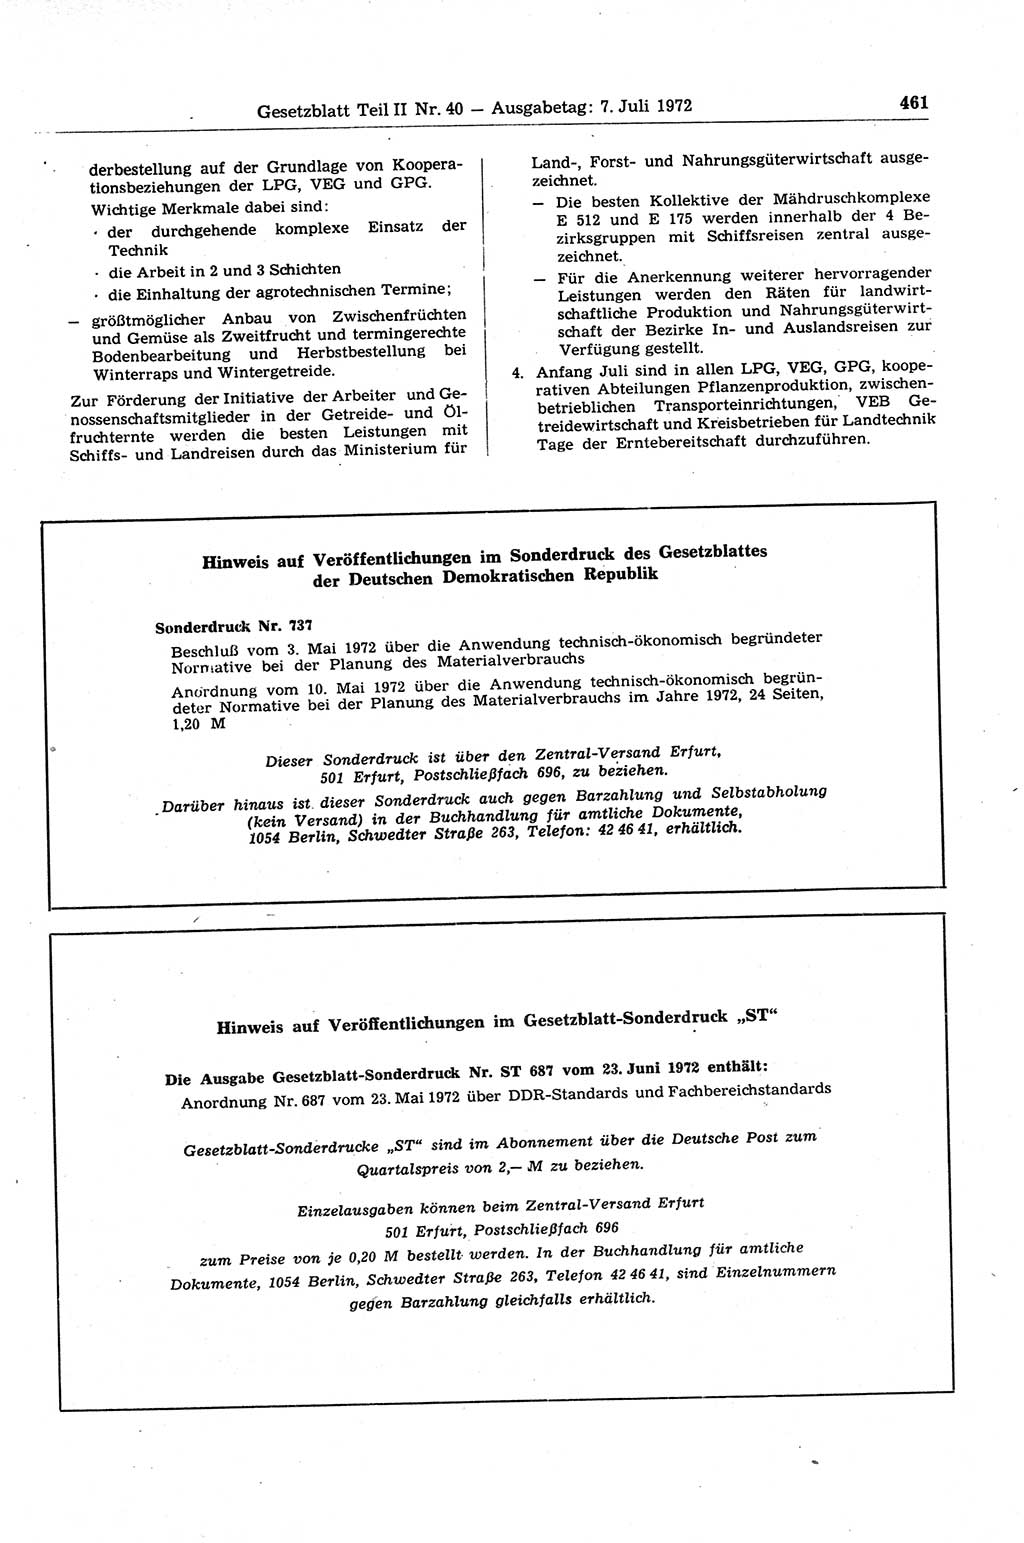 Gesetzblatt (GBl.) der Deutschen Demokratischen Republik (DDR) Teil ⅠⅠ 1972, Seite 461 (GBl. DDR ⅠⅠ 1972, S. 461)